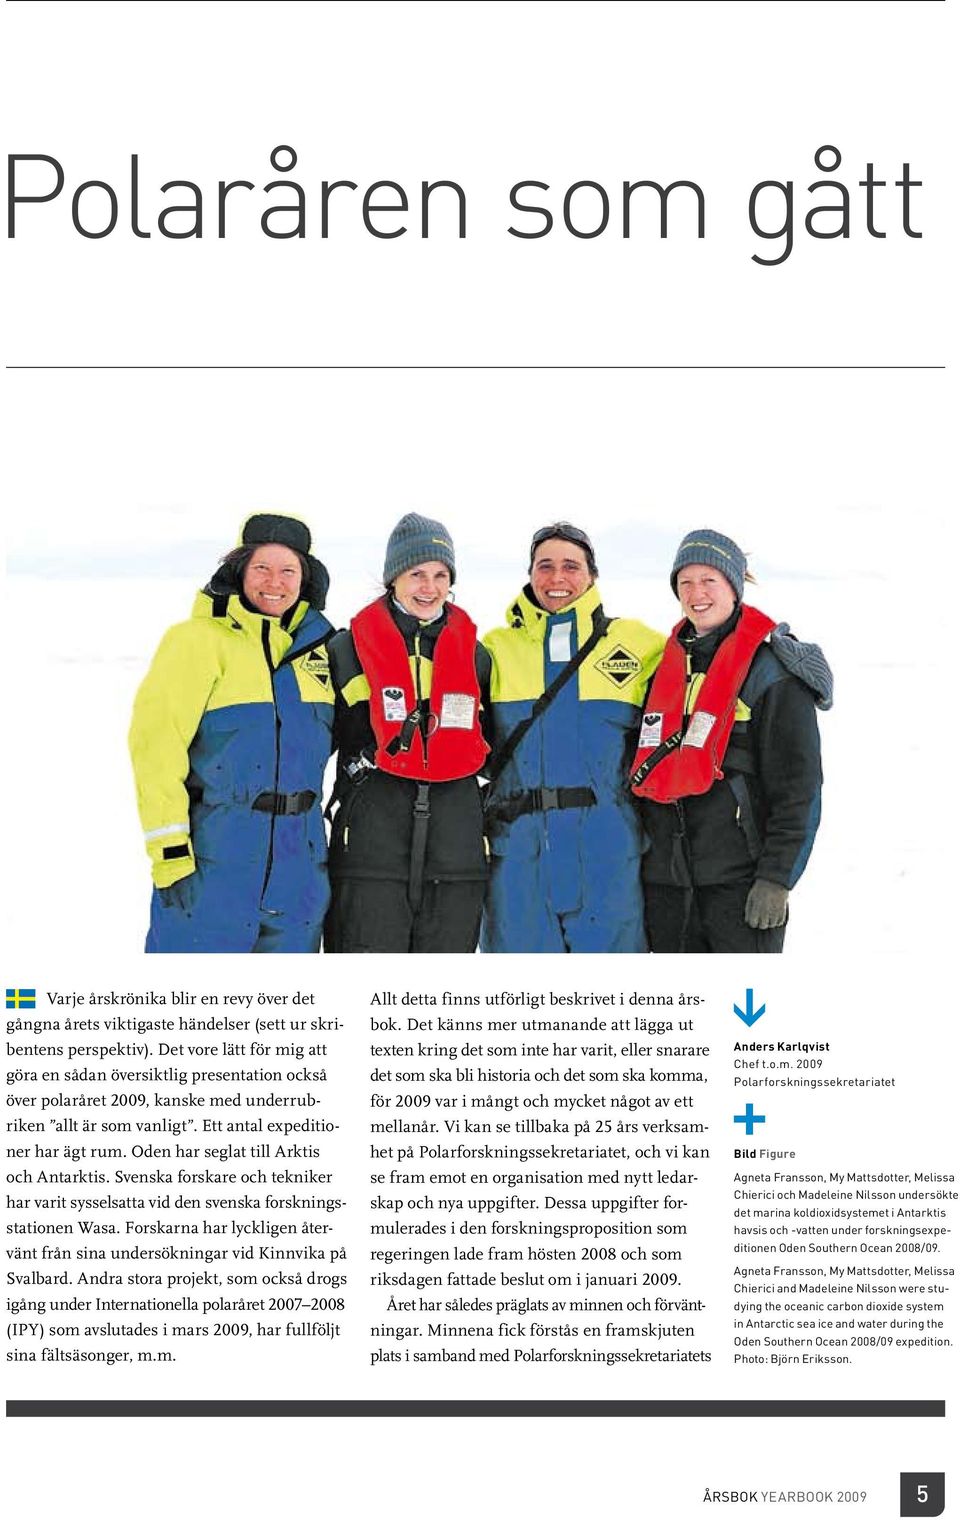 Oden har seglat till Arktis och Antarktis. Svenska forskare och tekniker har varit sysselsatta vid den svenska forskningsstationen Wasa.